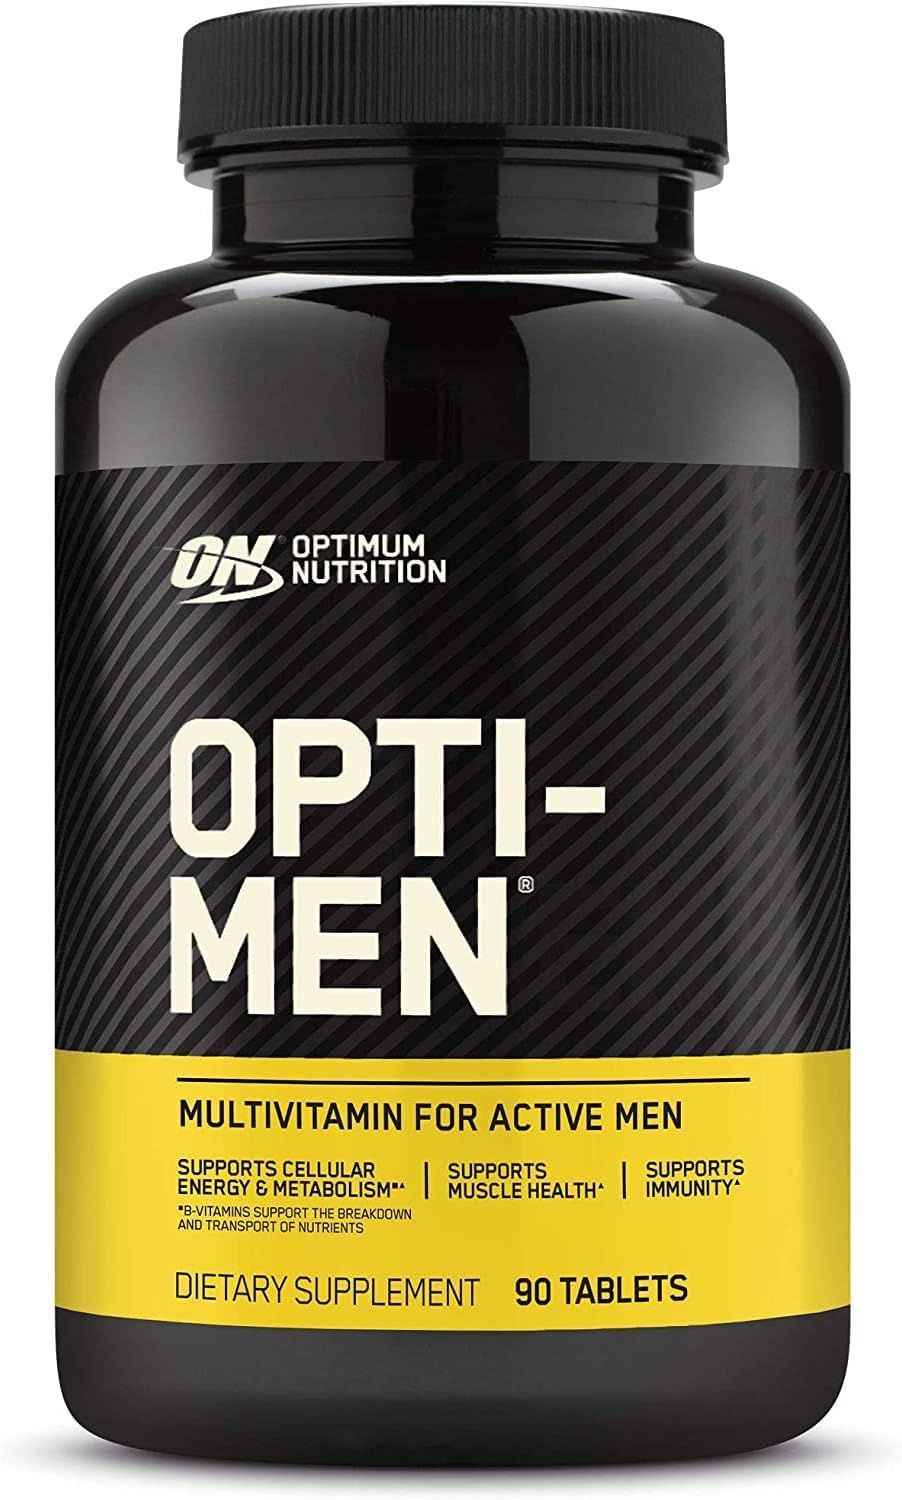 Opti-men 90 табл Optimum Nutrition. Optimum Opti-men 240 Tabs. Optimum Nutrition Opti - men 90 Tab. Optimum Nutrition Opti men 150 табл.